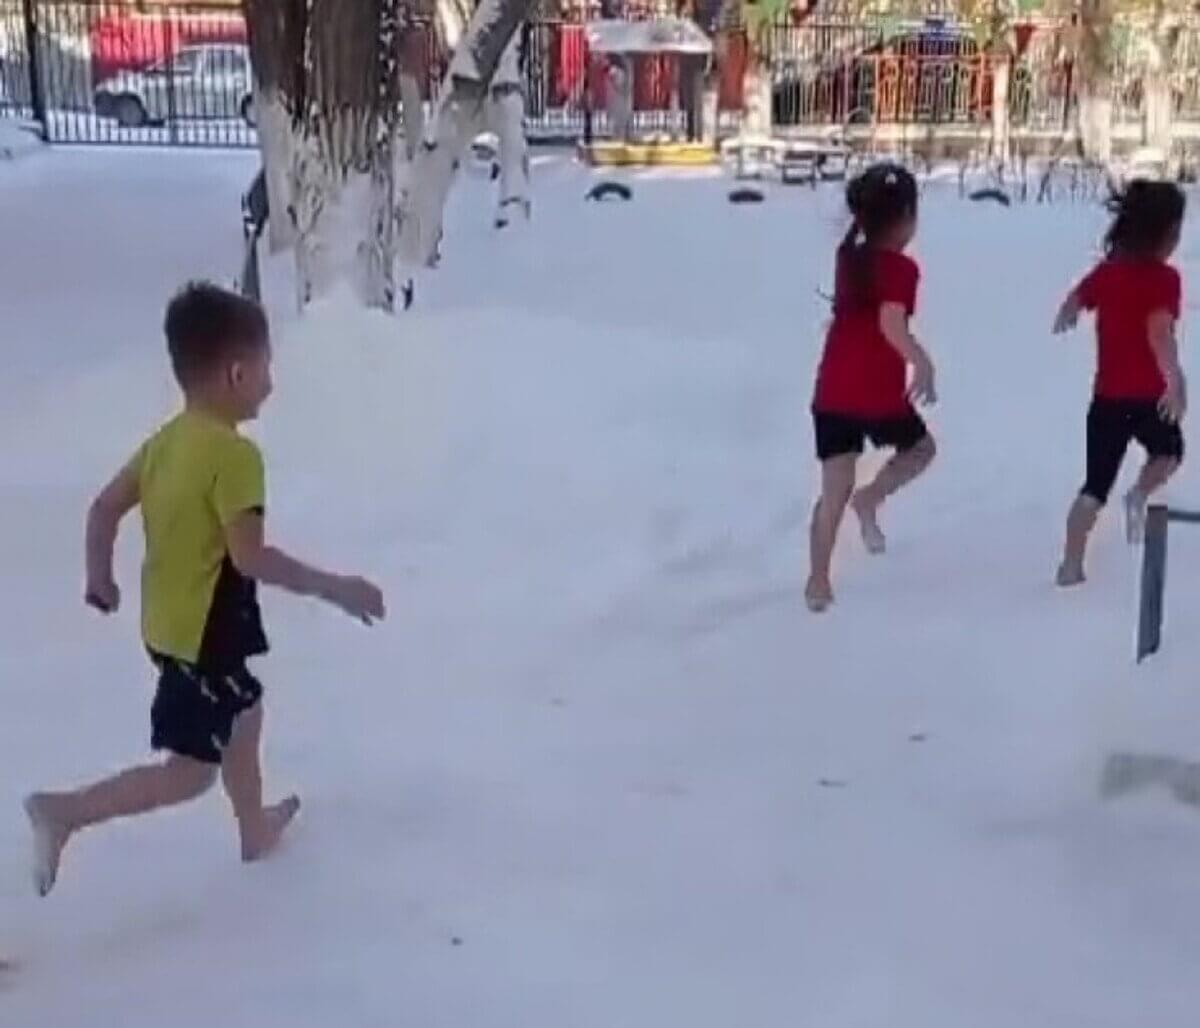 "Группа закаливания": бегающие босиком по снегу дошколята удивили Казнет